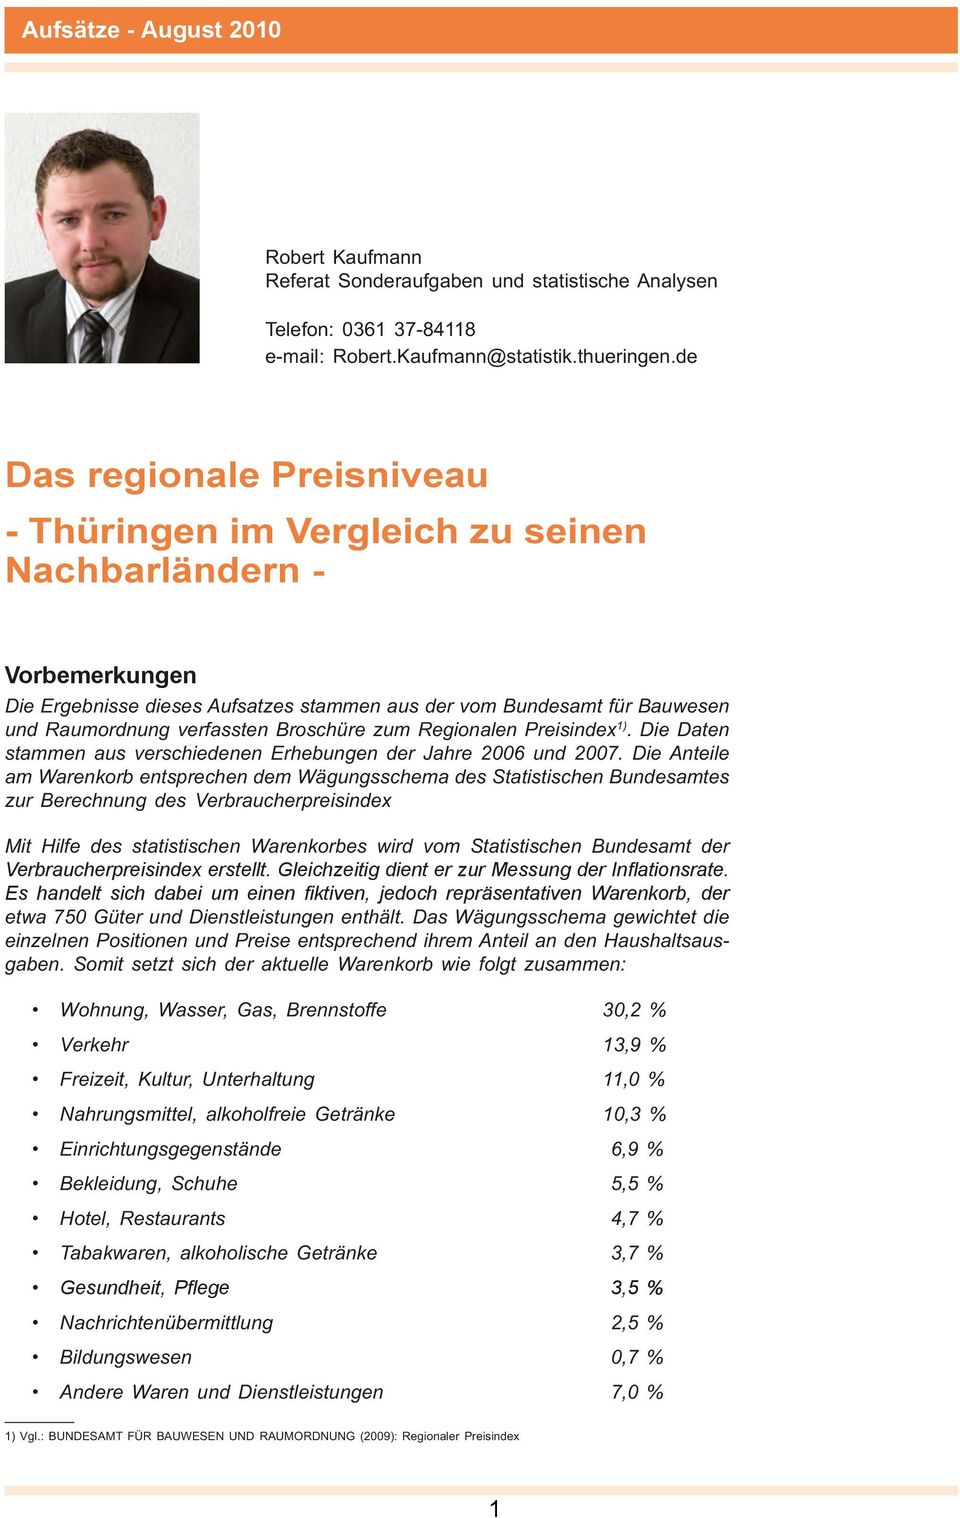 Broschüre zum Regionalen Preisindex 1). Die Daten stammen aus verschiedenen Erhebungen der Jahre 2006 und 2007.